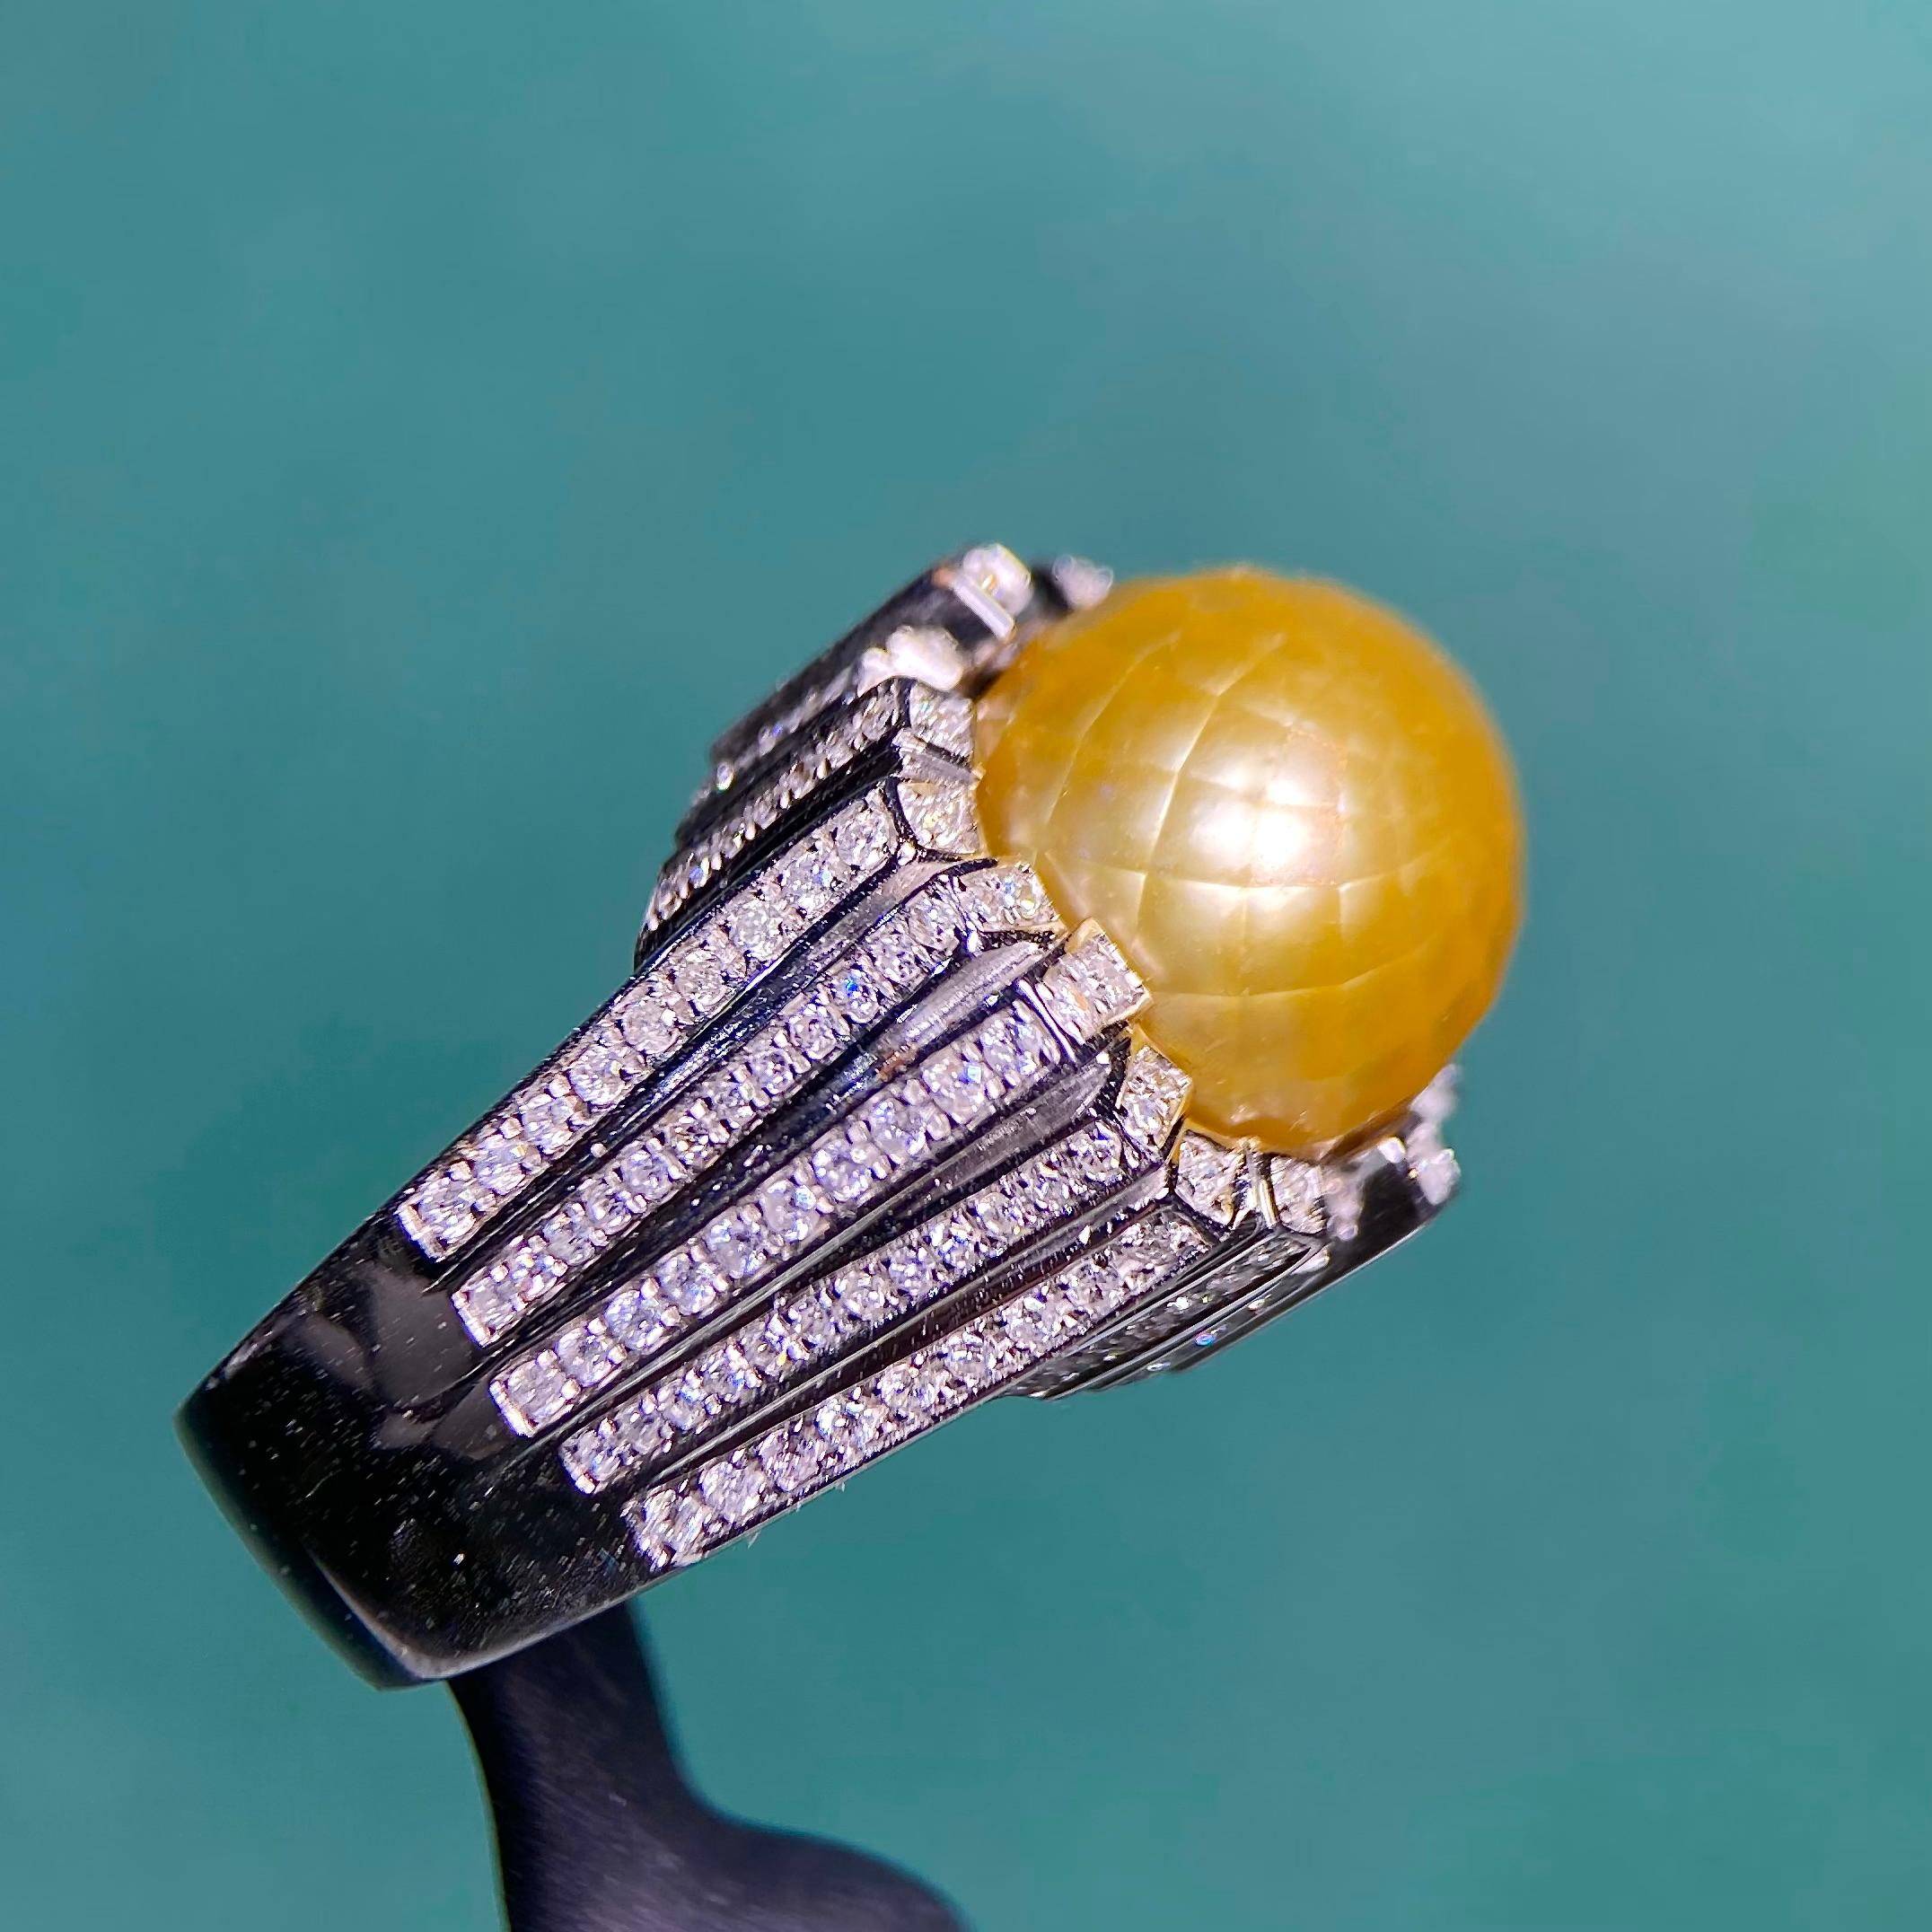 Die facettierte goldene Südseeperle ist von Diamanten umgeben, die in einem quadratischen und rechteckigen geometrischen Design gefasst sind. Dies ist ein sehr interessantes Stück, da die Oberfläche der runden Perle nicht mehr glatt ist, sondern